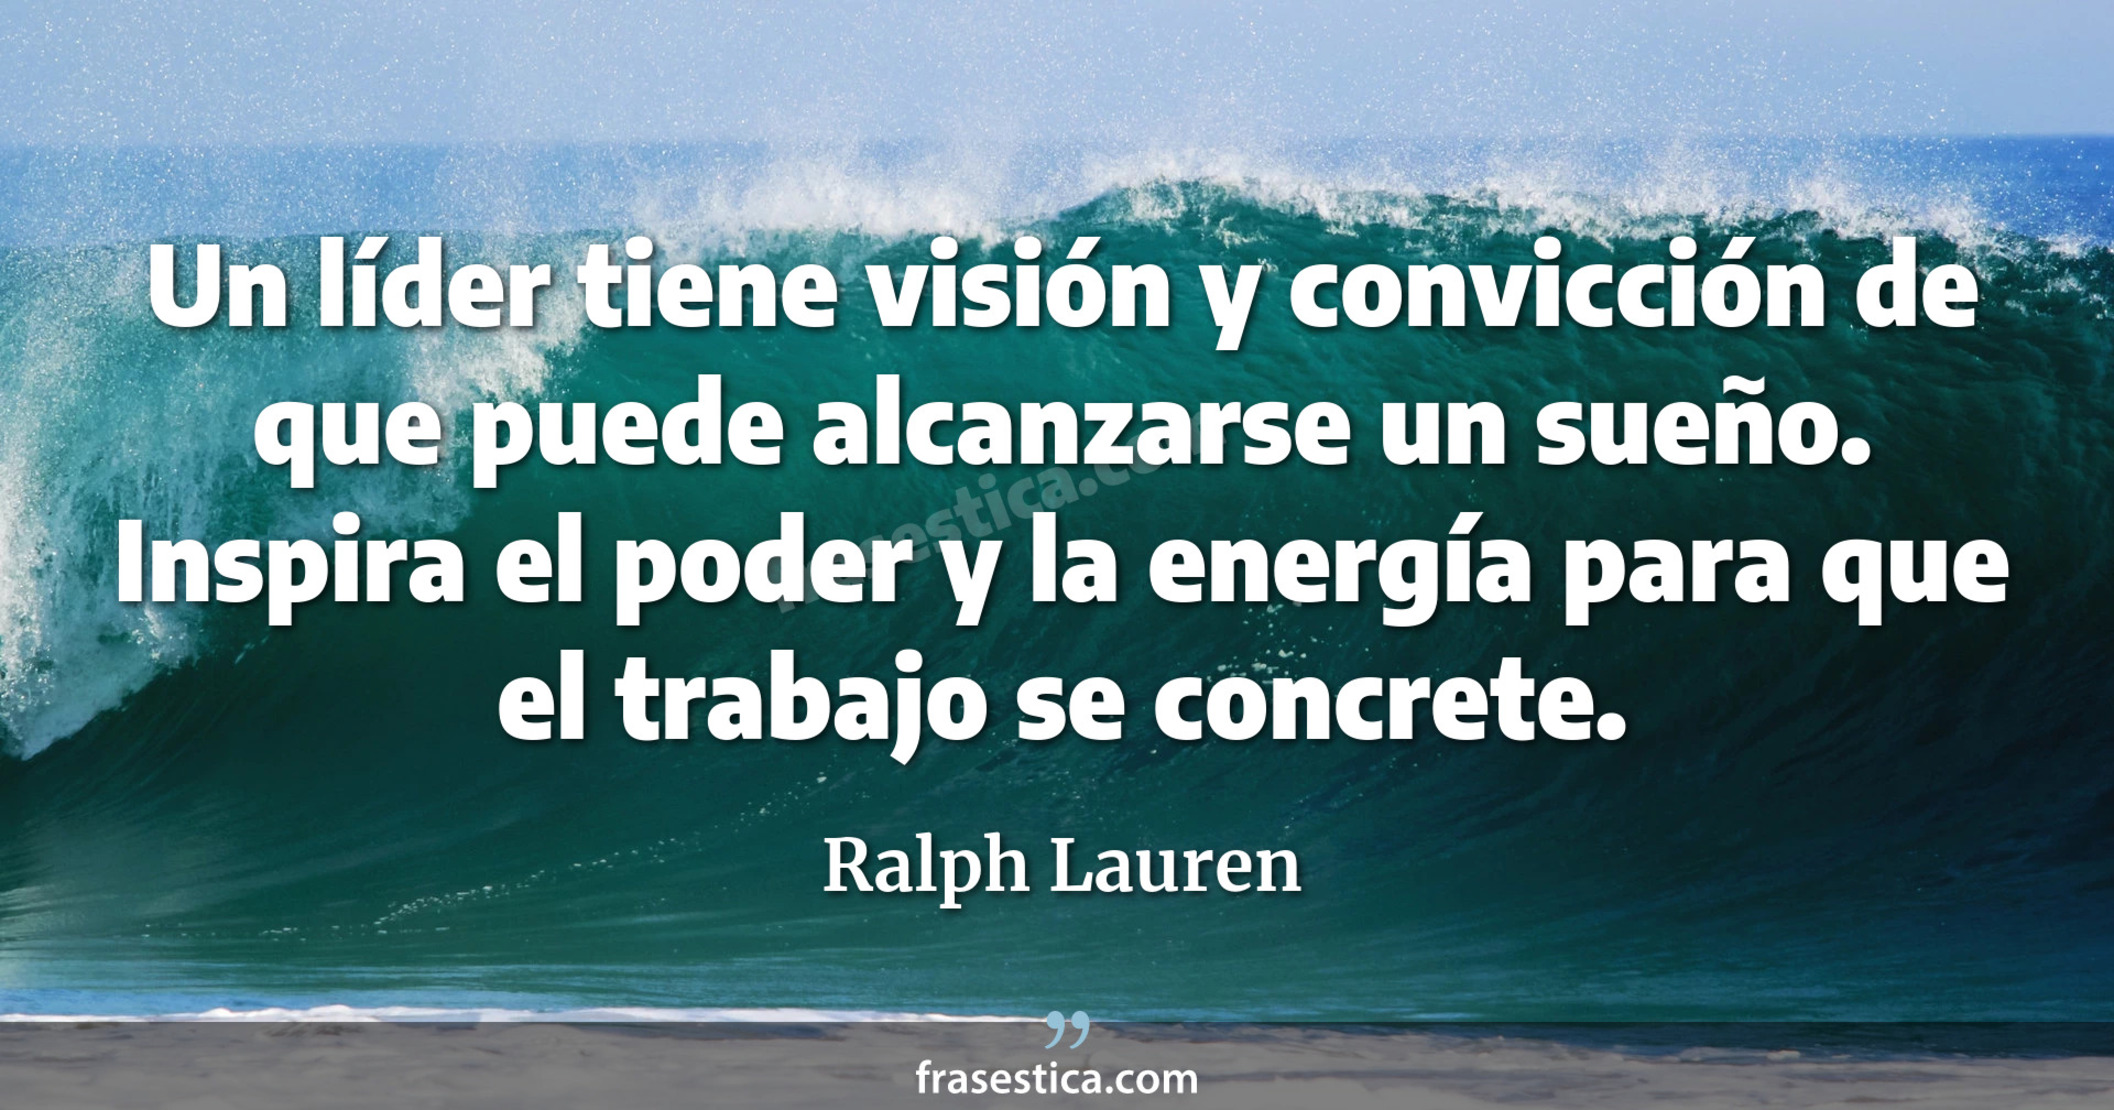 Un líder tiene visión y convicción de que puede alcanzarse un sueño. Inspira el poder y la energía para que el trabajo se concrete. - Ralph Lauren